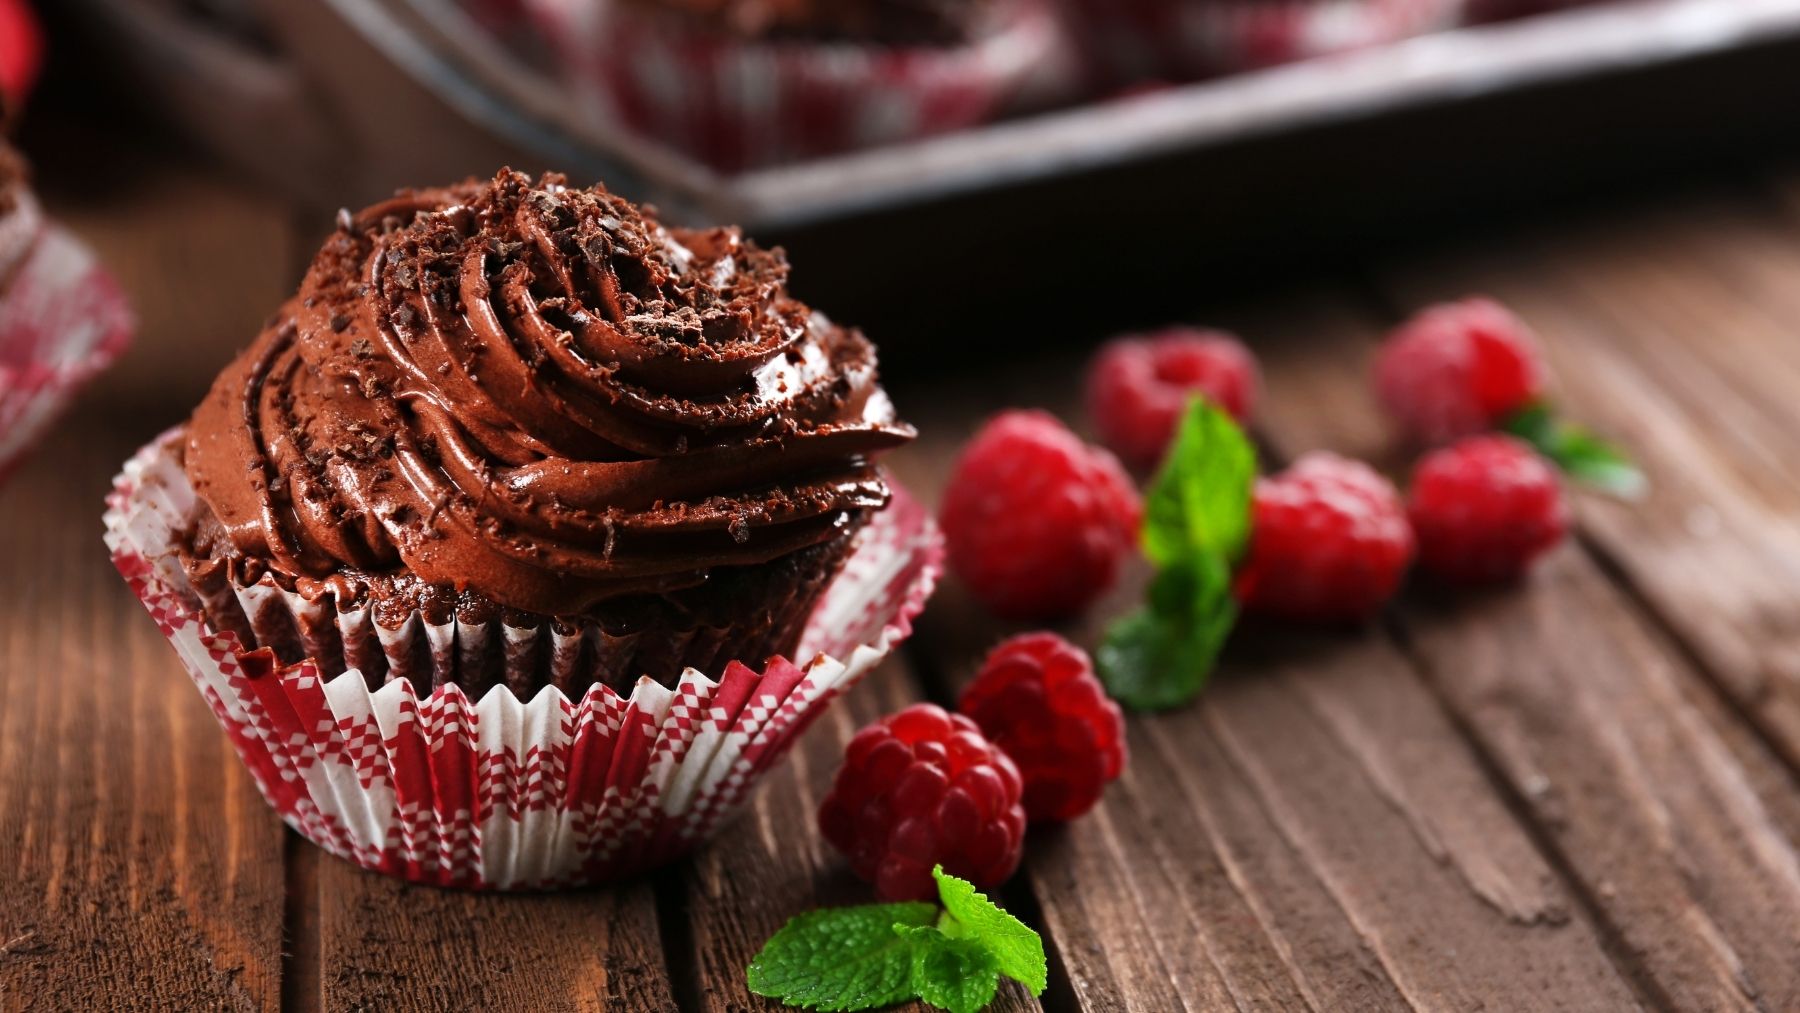 Cupcakes de chocolate y frambuesas, una receta dulce para toda la familia 5